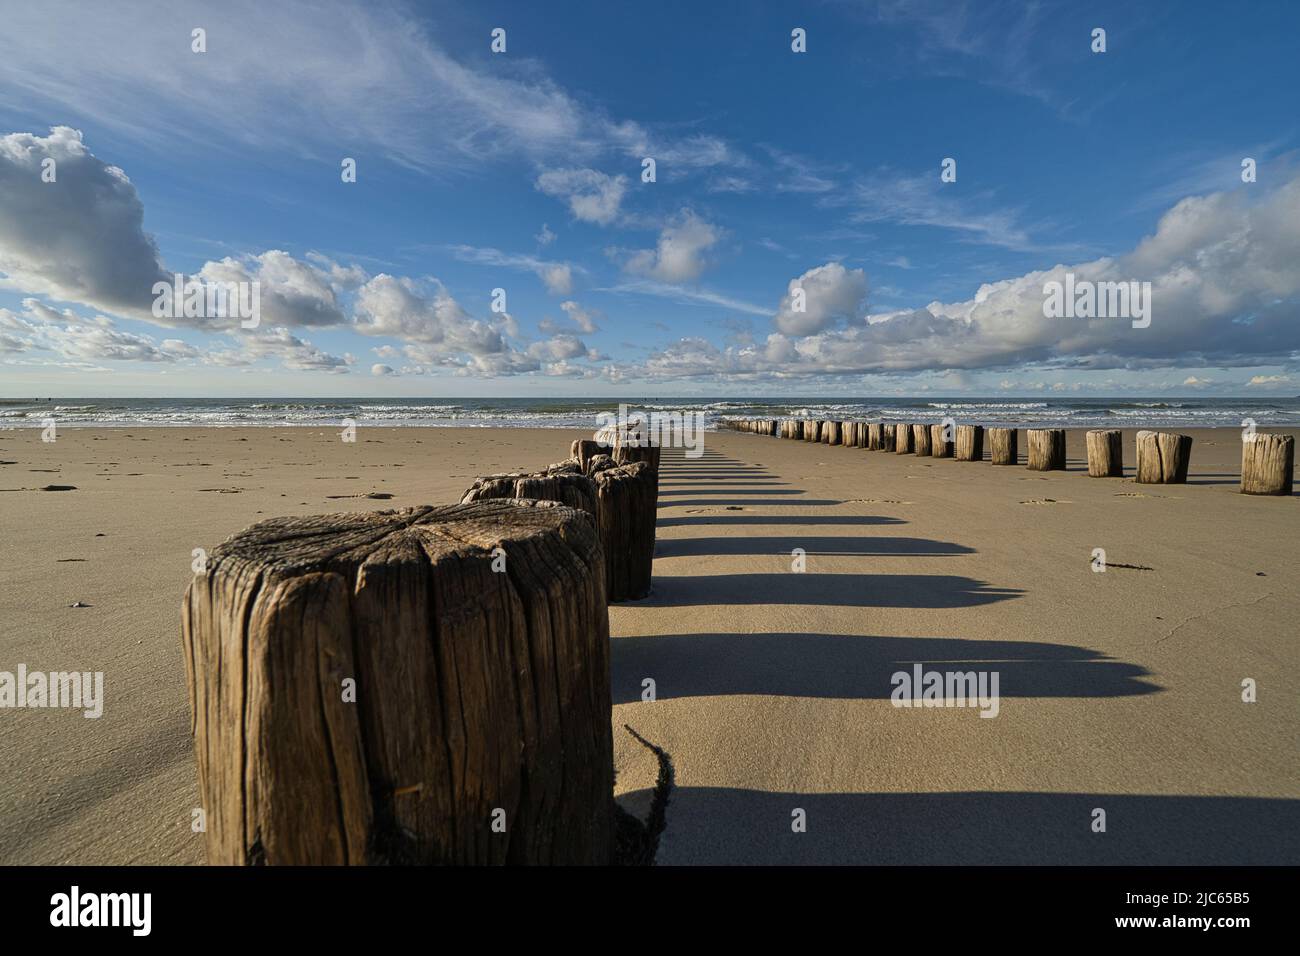 Antiguas palisades de madera en la playa con el mar y las nubes en el fondo Foto de stock